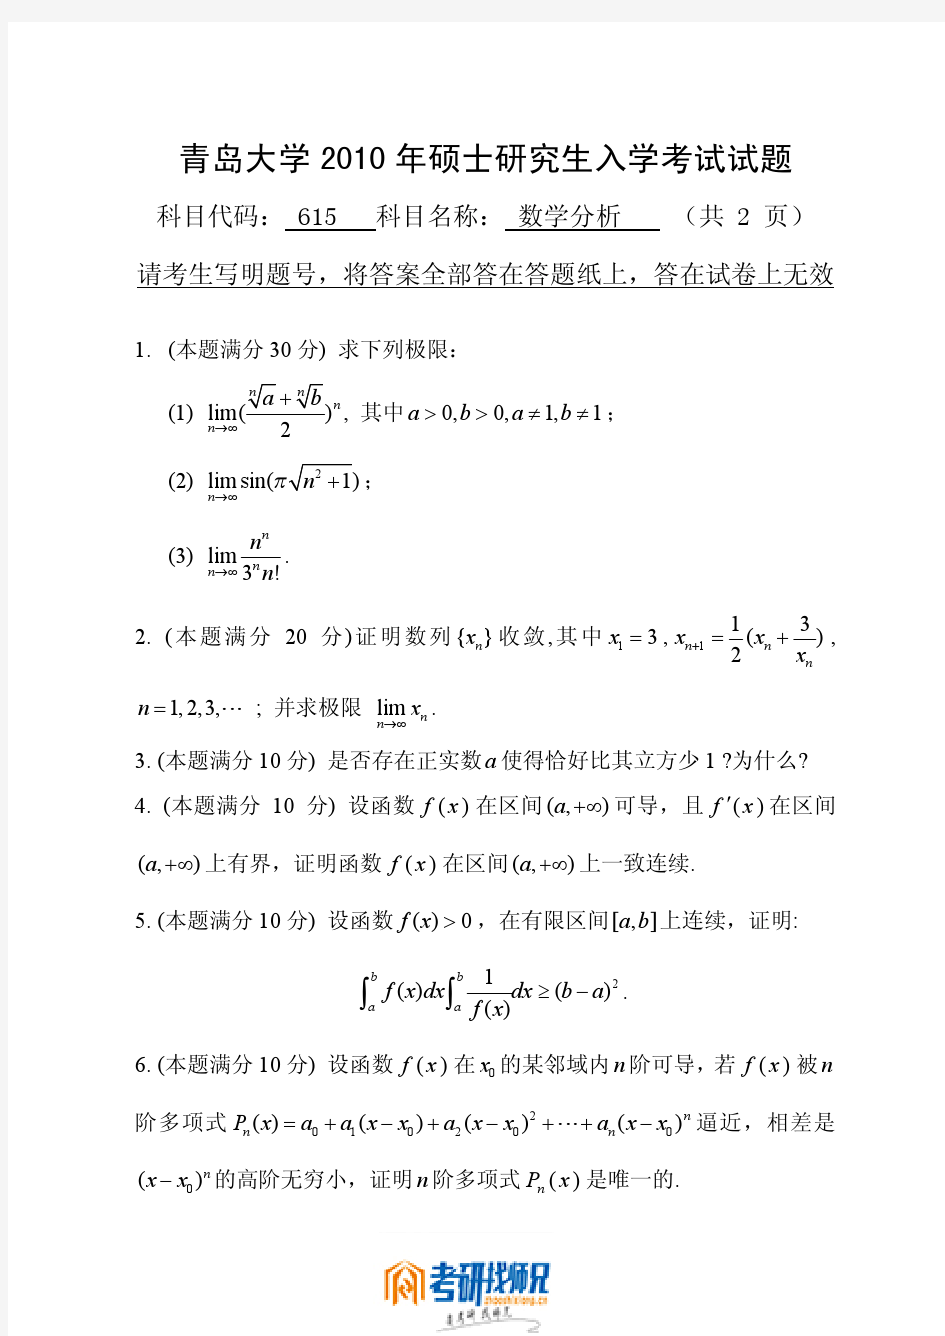 青岛大学数学分析2010真题